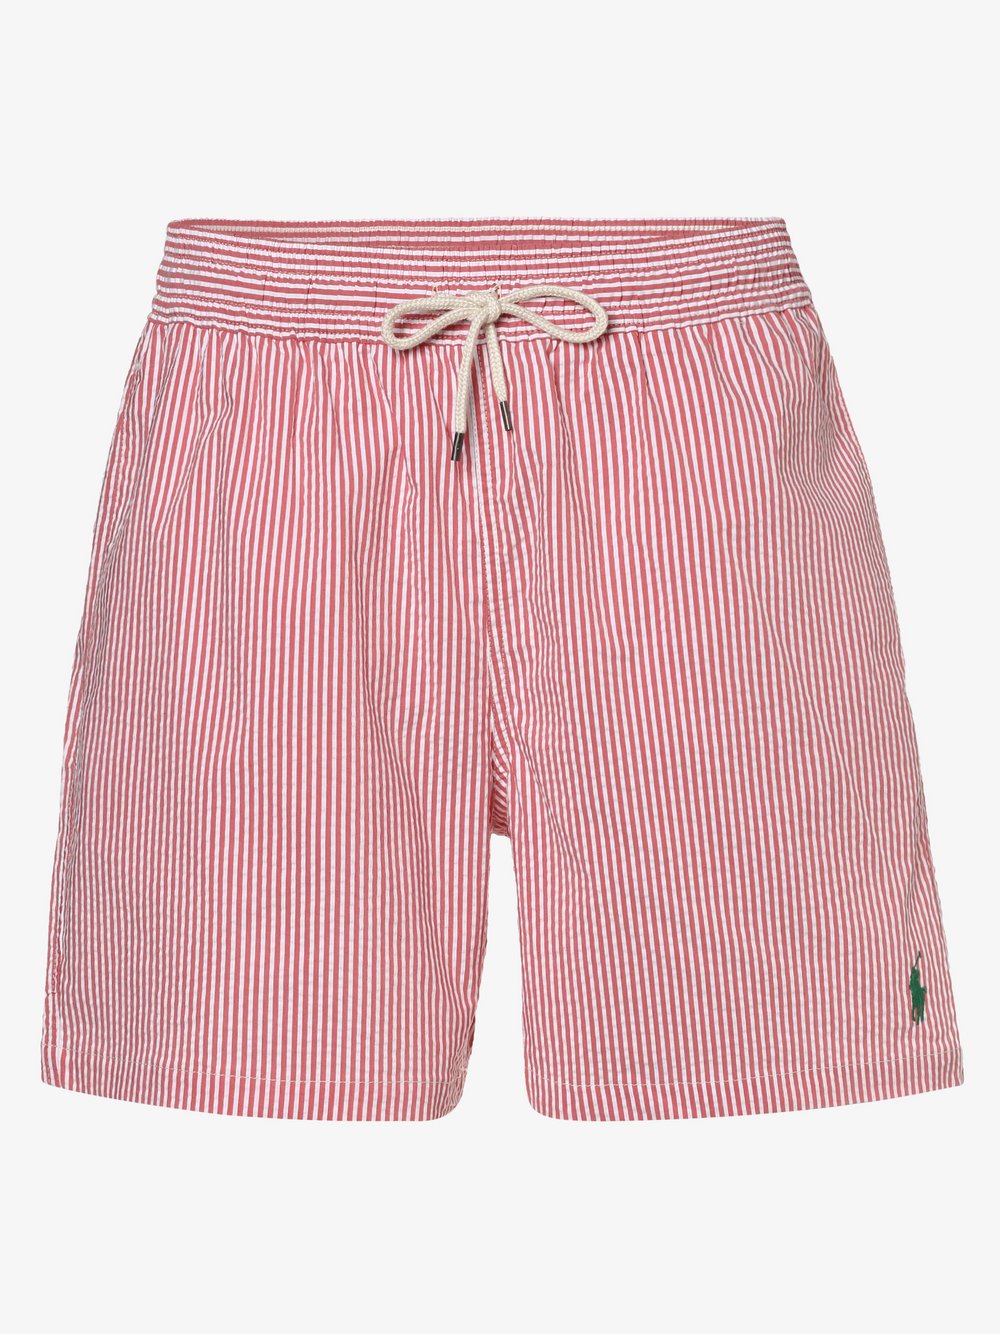 Polo Ralph Lauren Cord Hemd aus Baumwollcord in Rot für Herren Herren Bekleidung Bademode Boardshorts und Badeshorts 